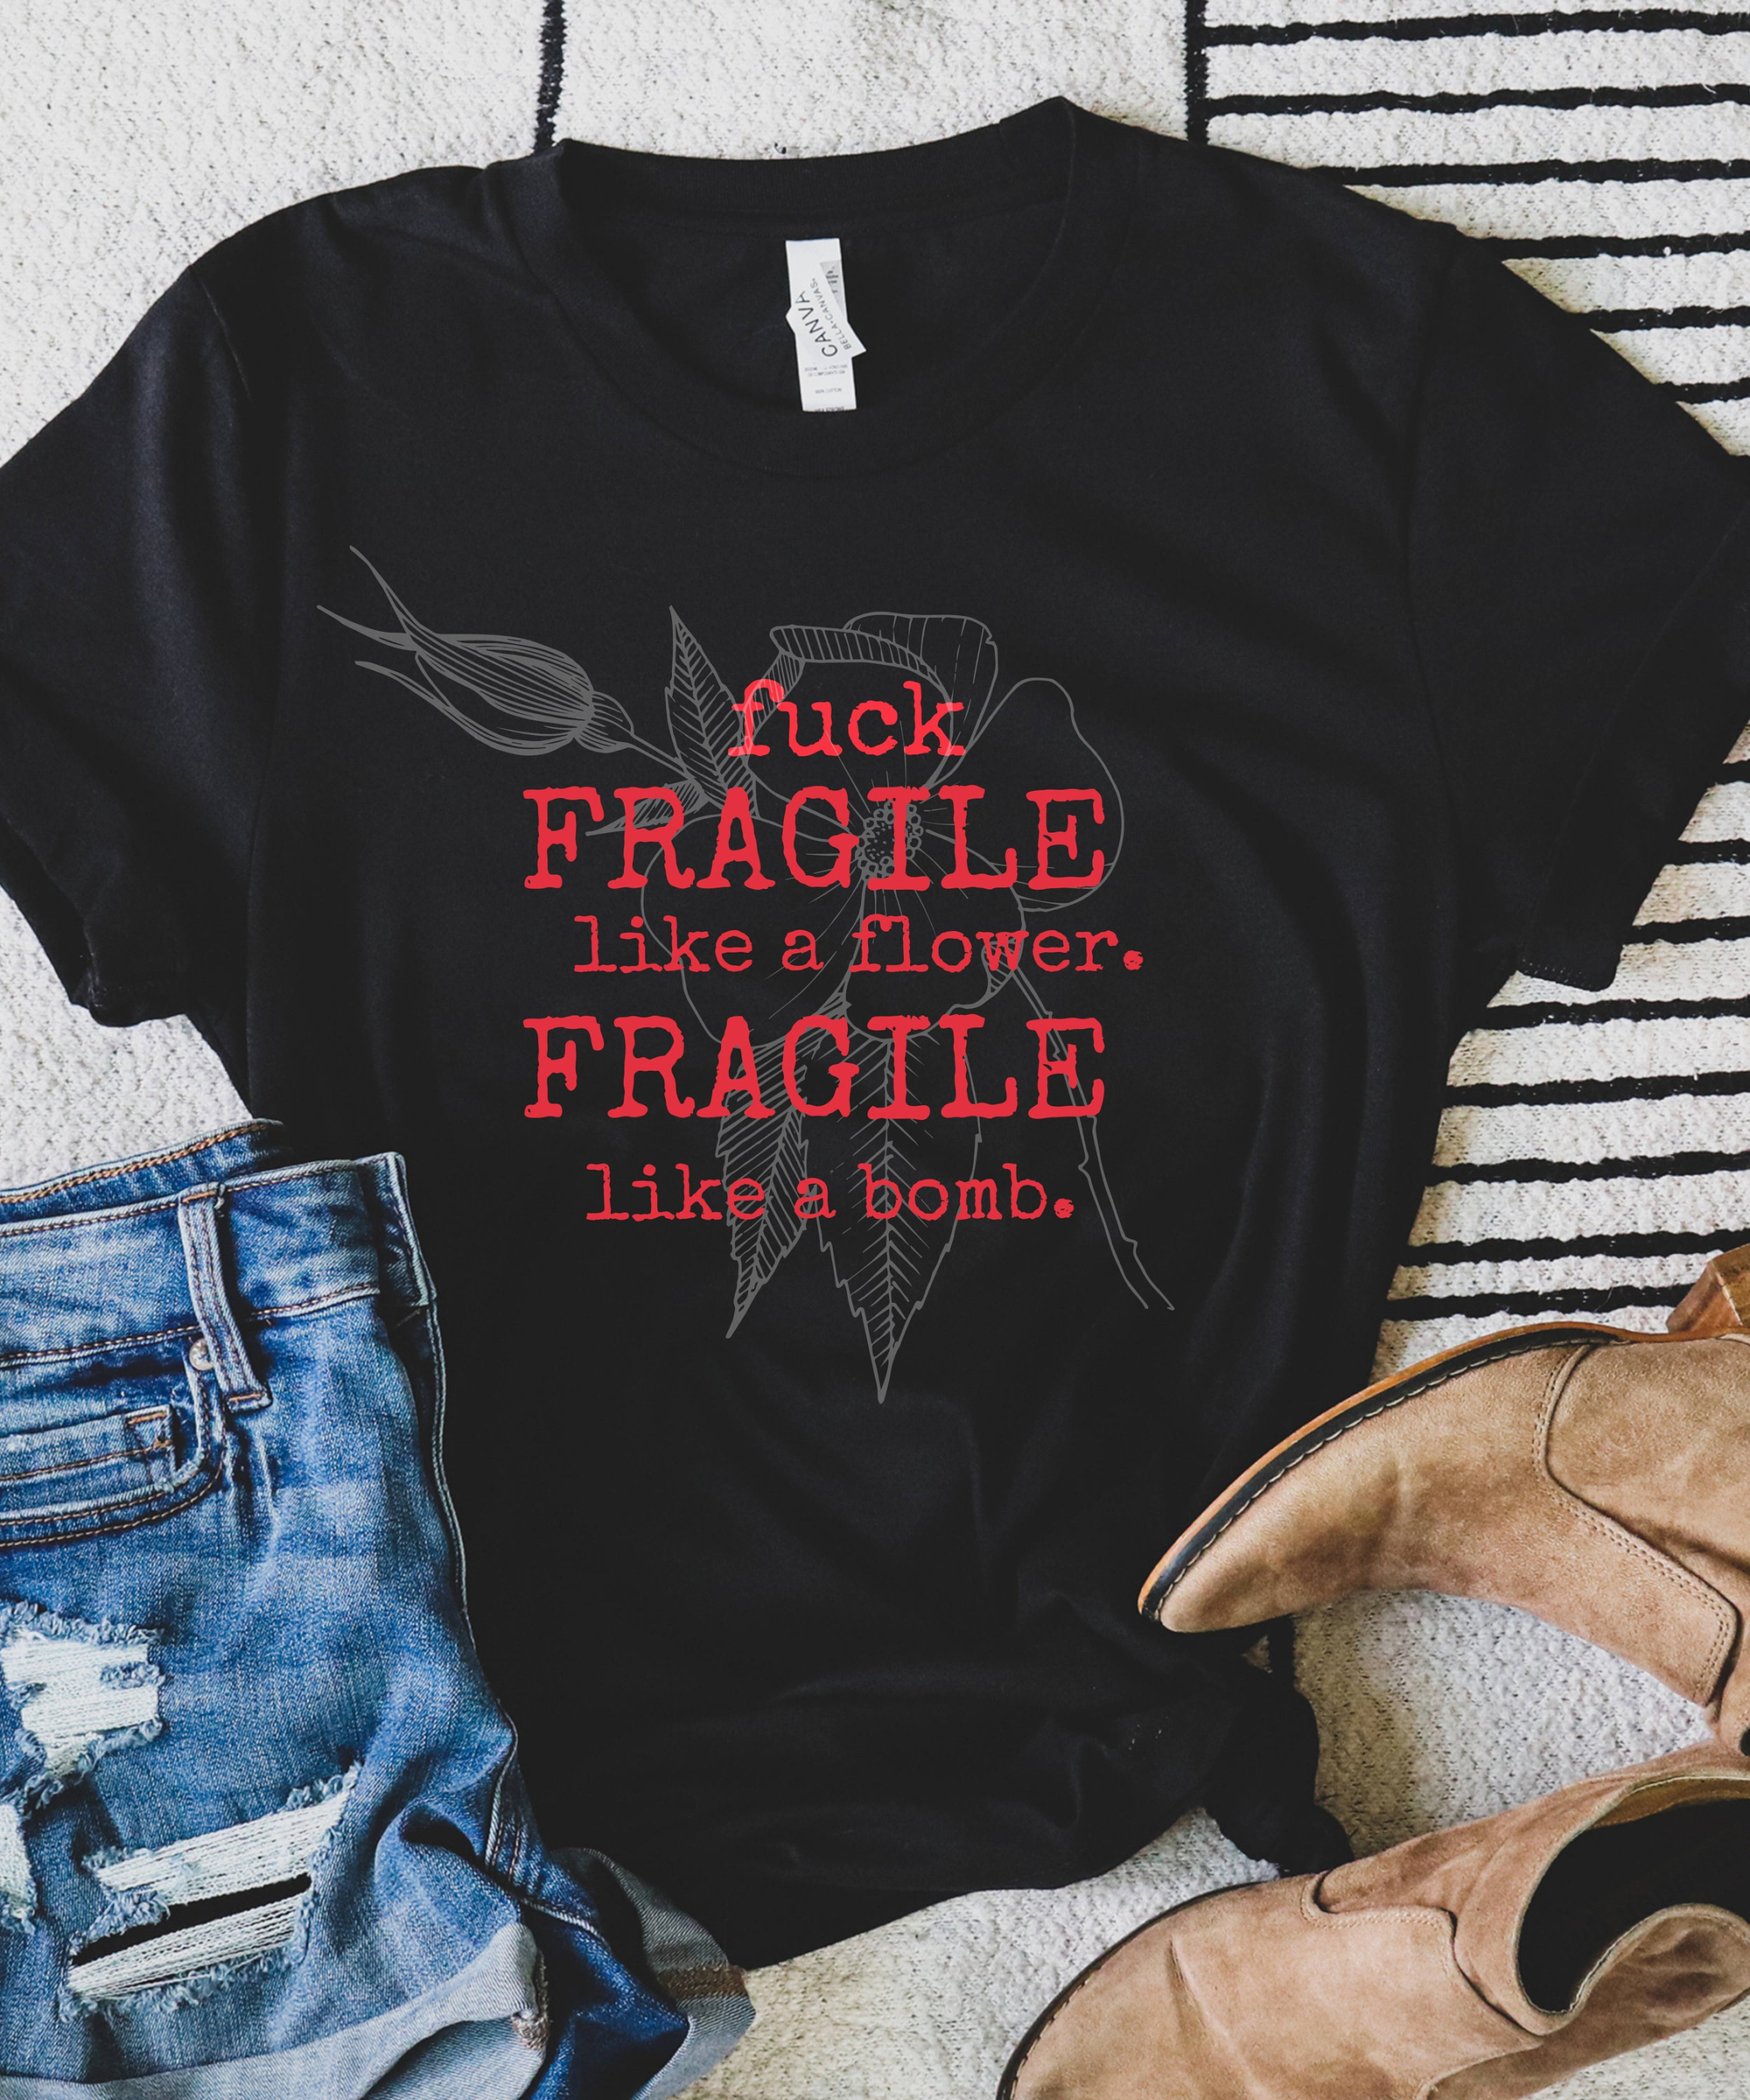 Fragile Like a Bomb